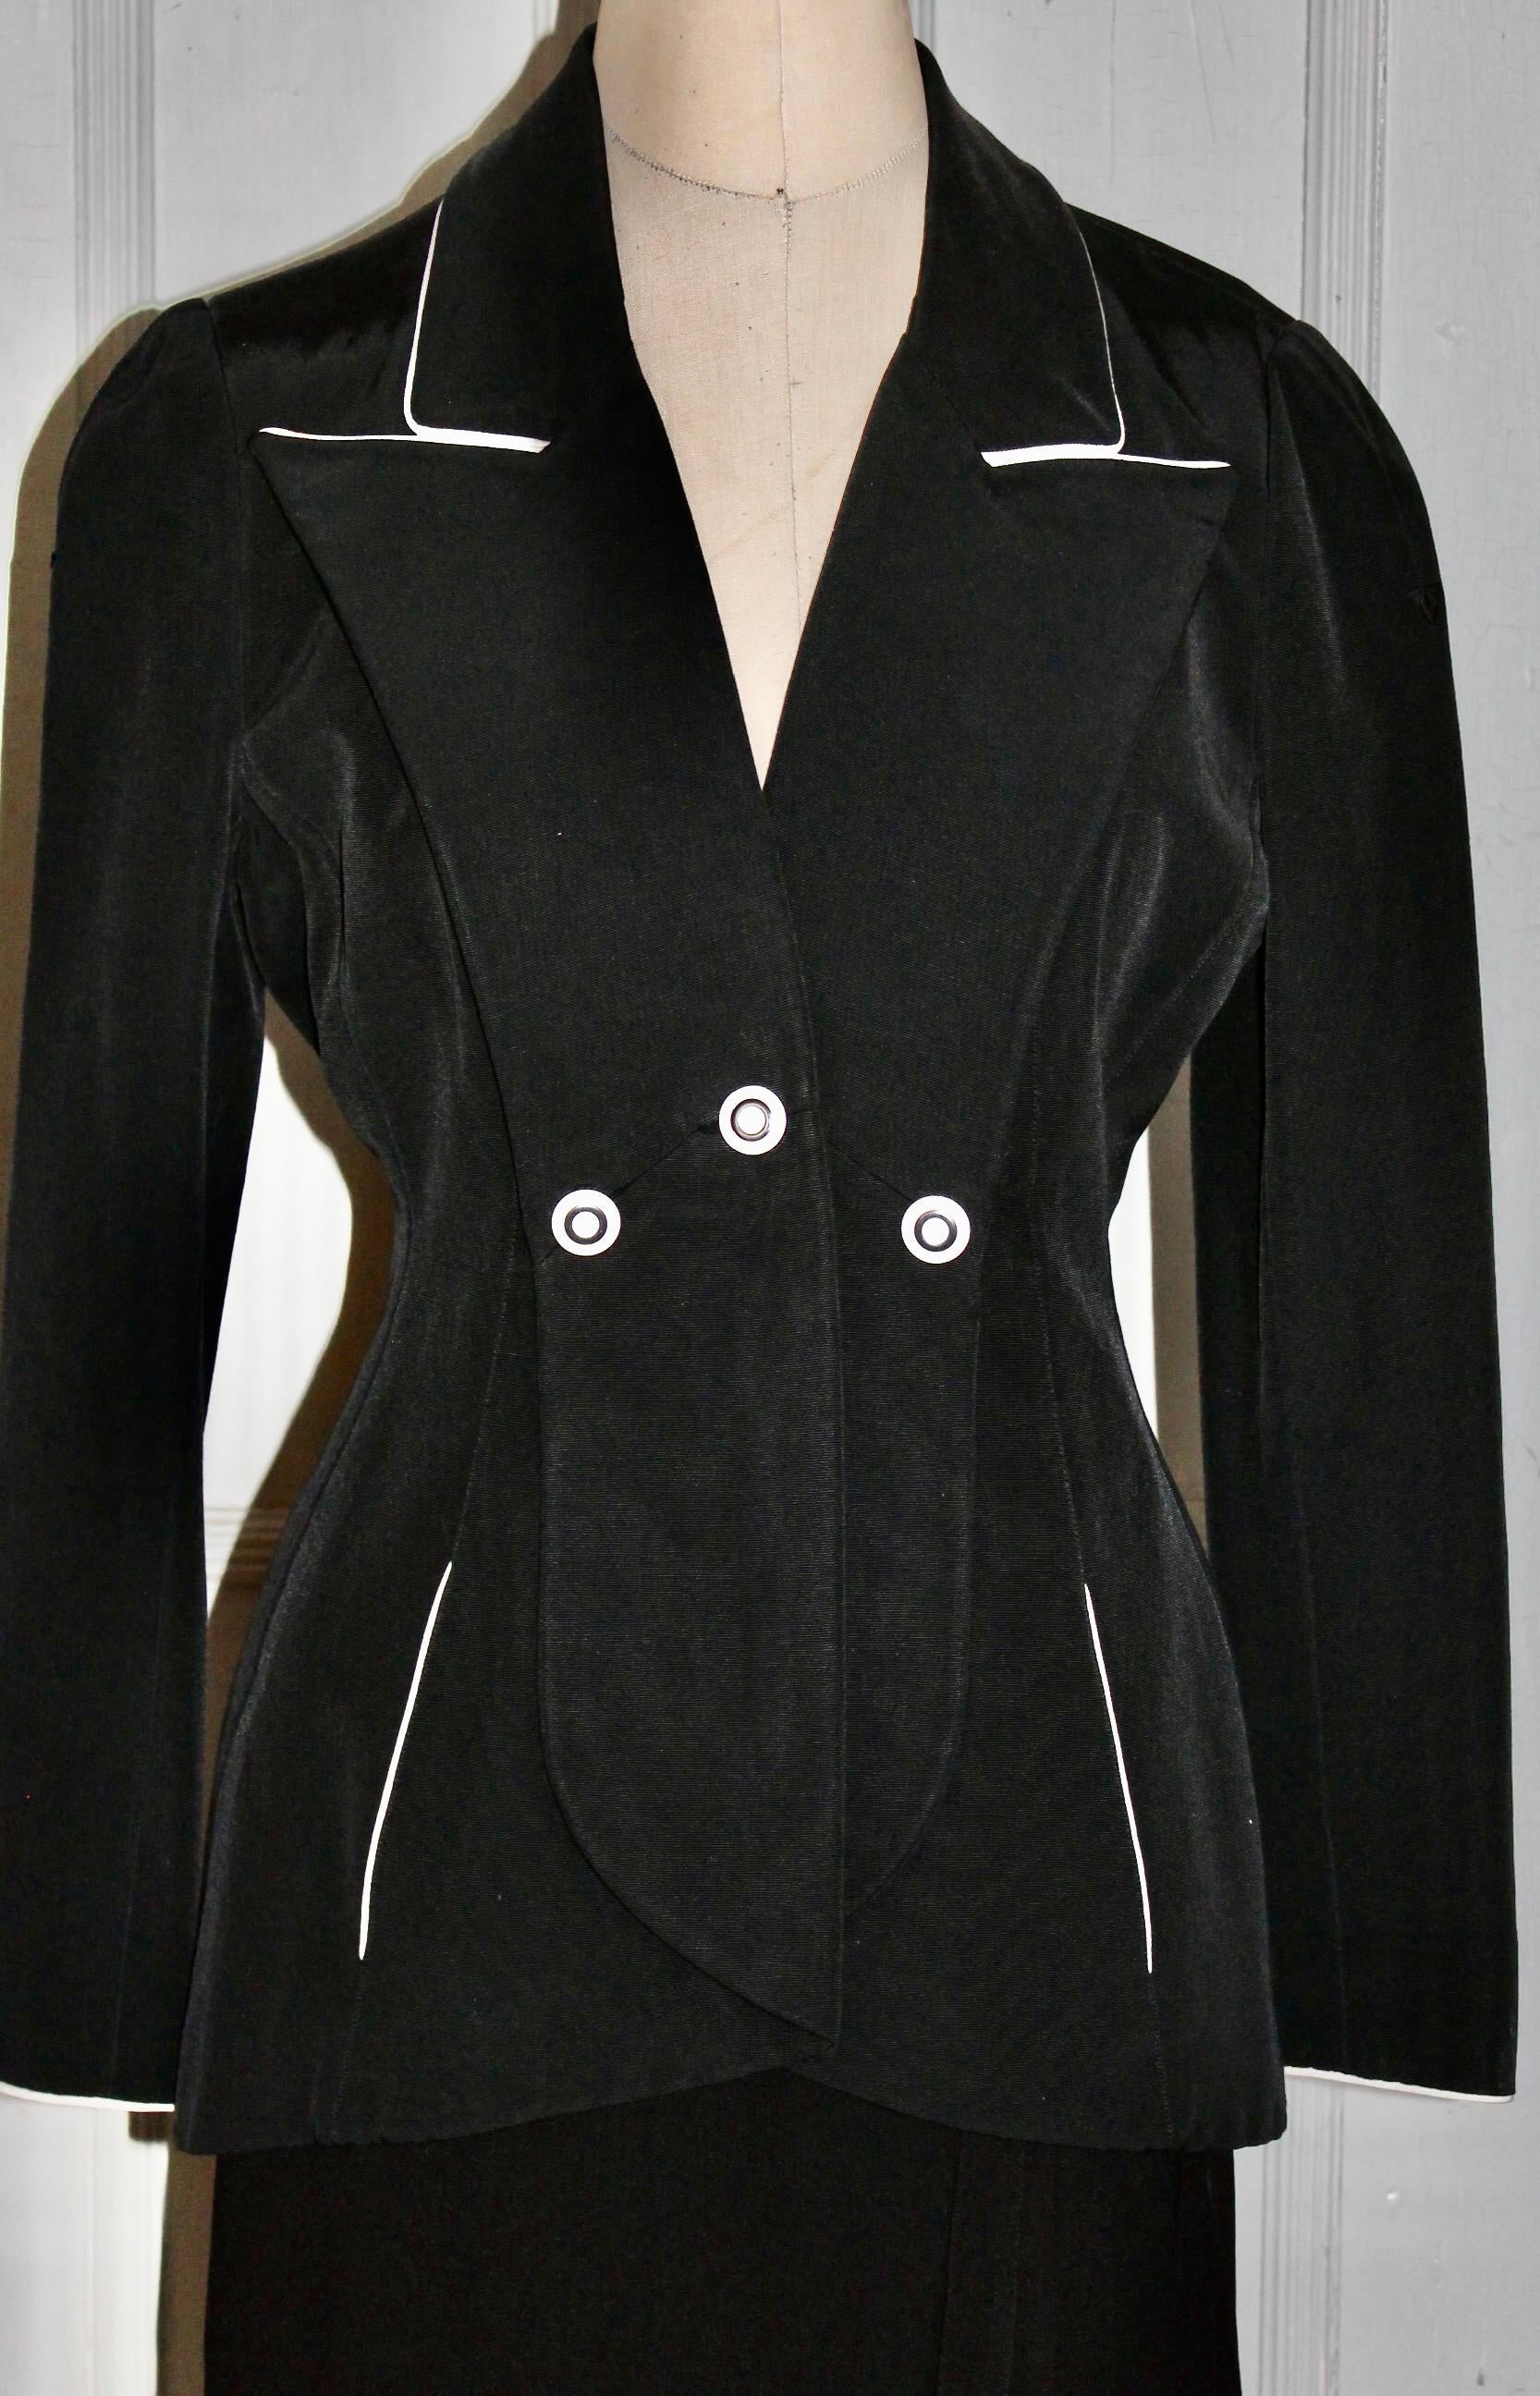 Eine Karl Lagerfeld Made in France Jacke in klassischem Schwarz mit weißen Knöpfen und weißem Saum.  Taschen.  Scheint eine Seidenmischung zu sein.